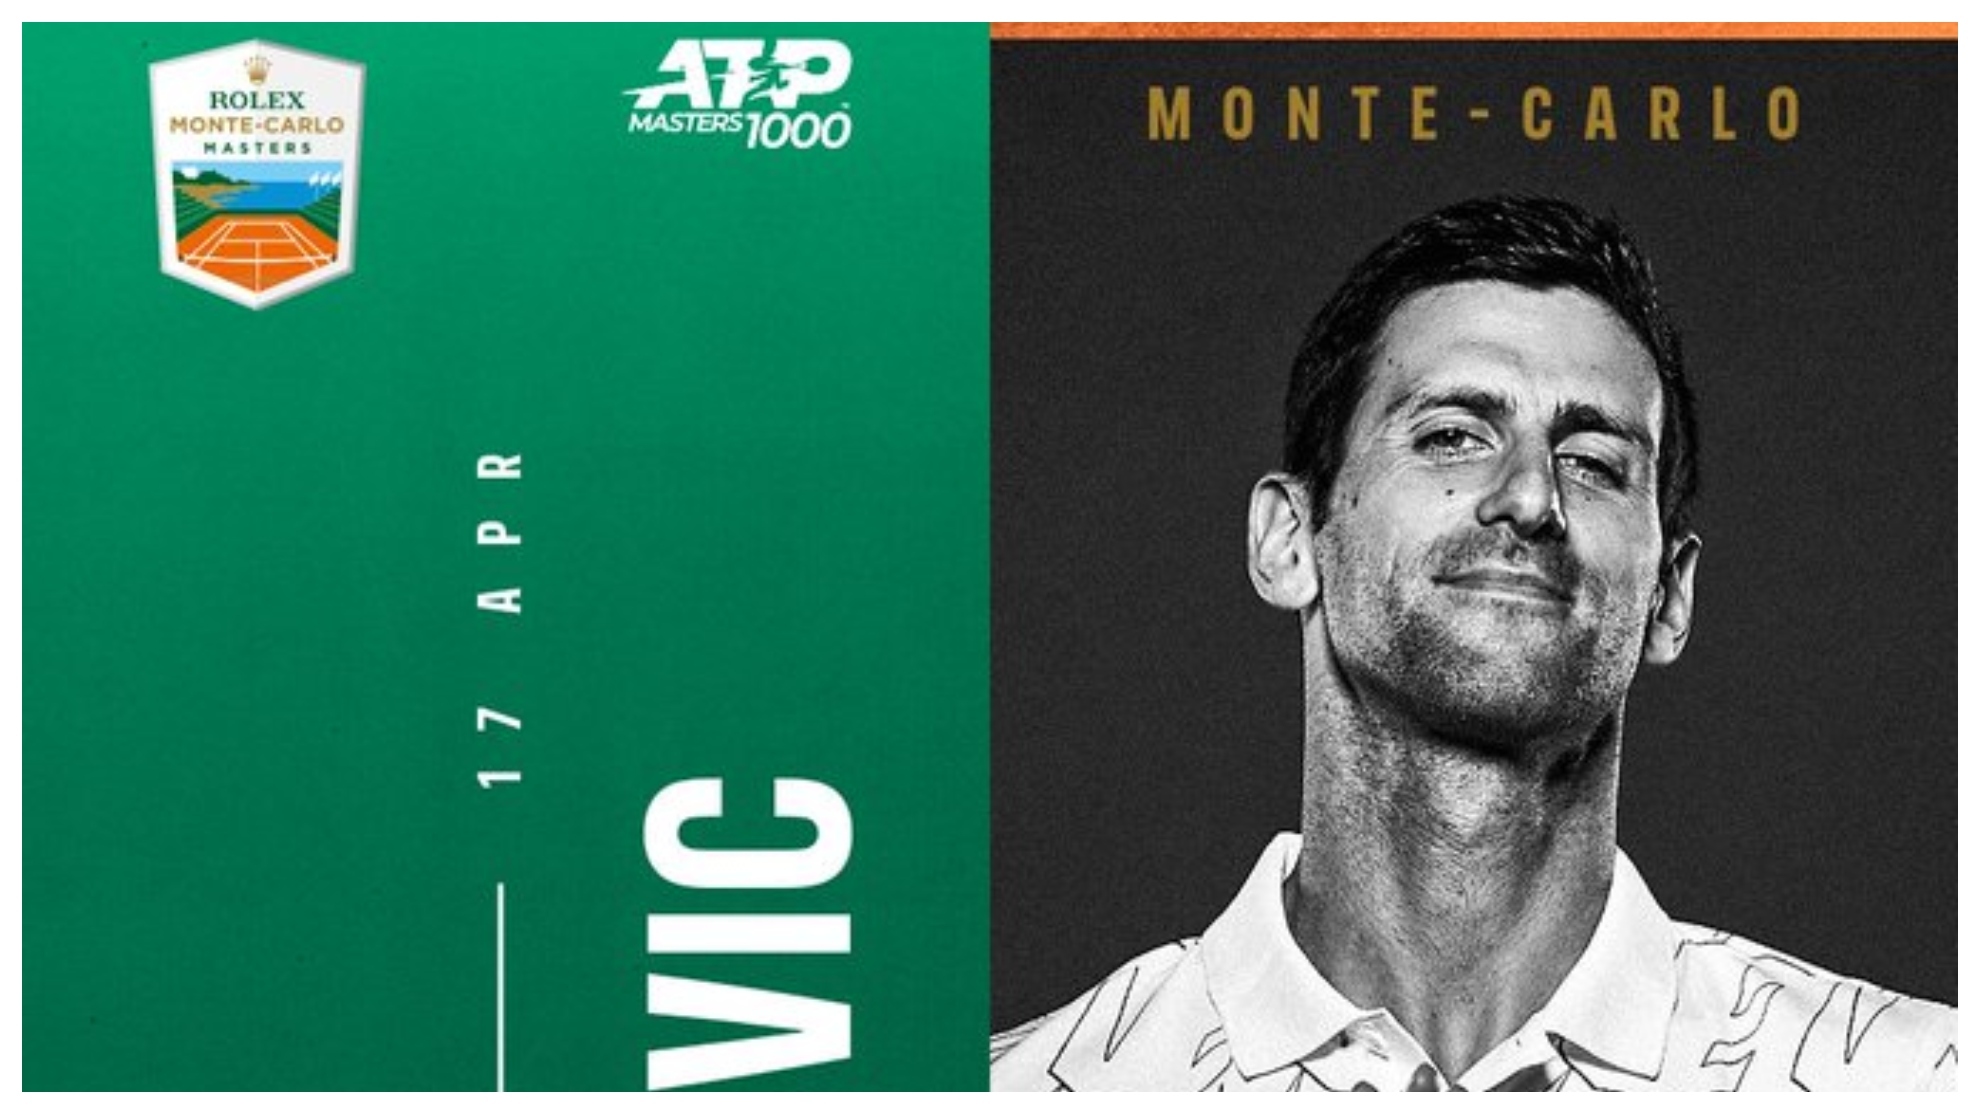 Djokovic, en el cartel promocional del torneo